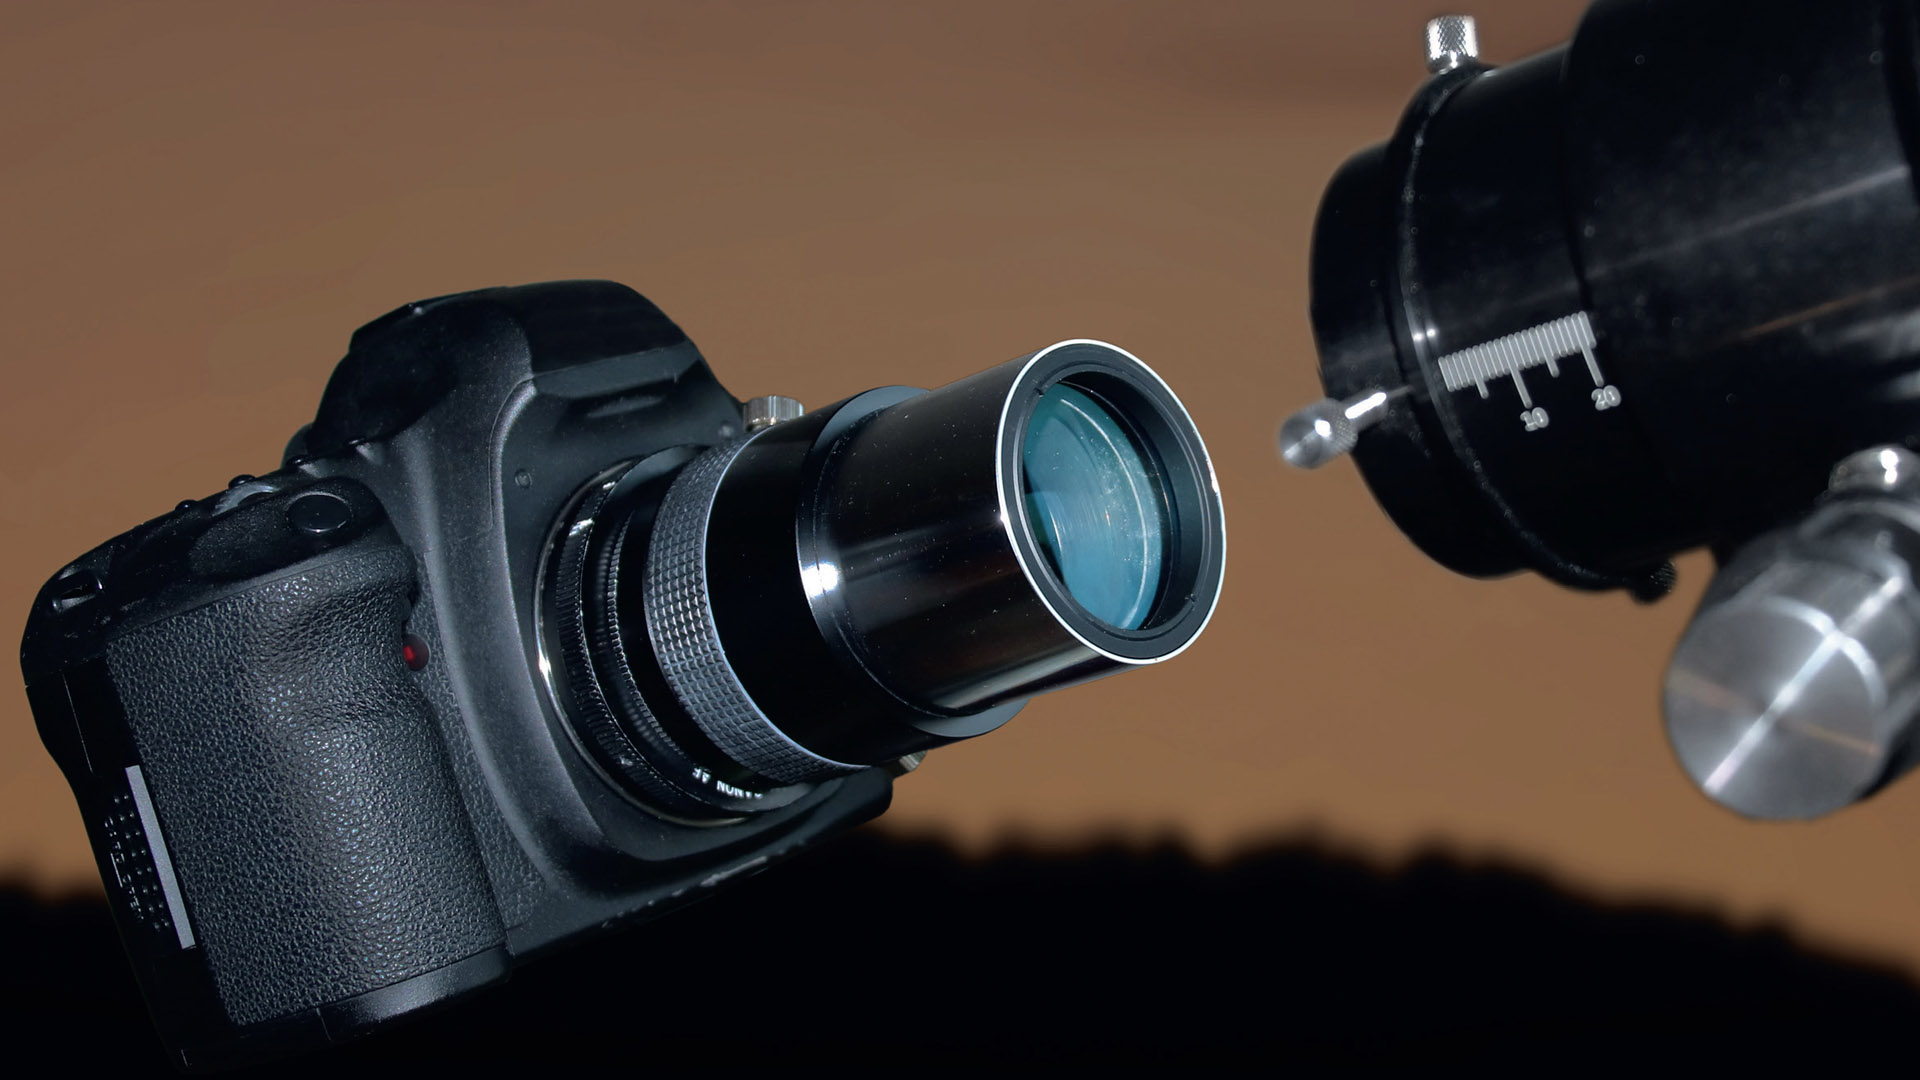 Les réducteurs sont des systèmes de lentilles destinés à diminuer la distance focale du télescope. Ils sont disponibles dans différentes variantes et avec des facteurs de réduction différents. M. Weigand